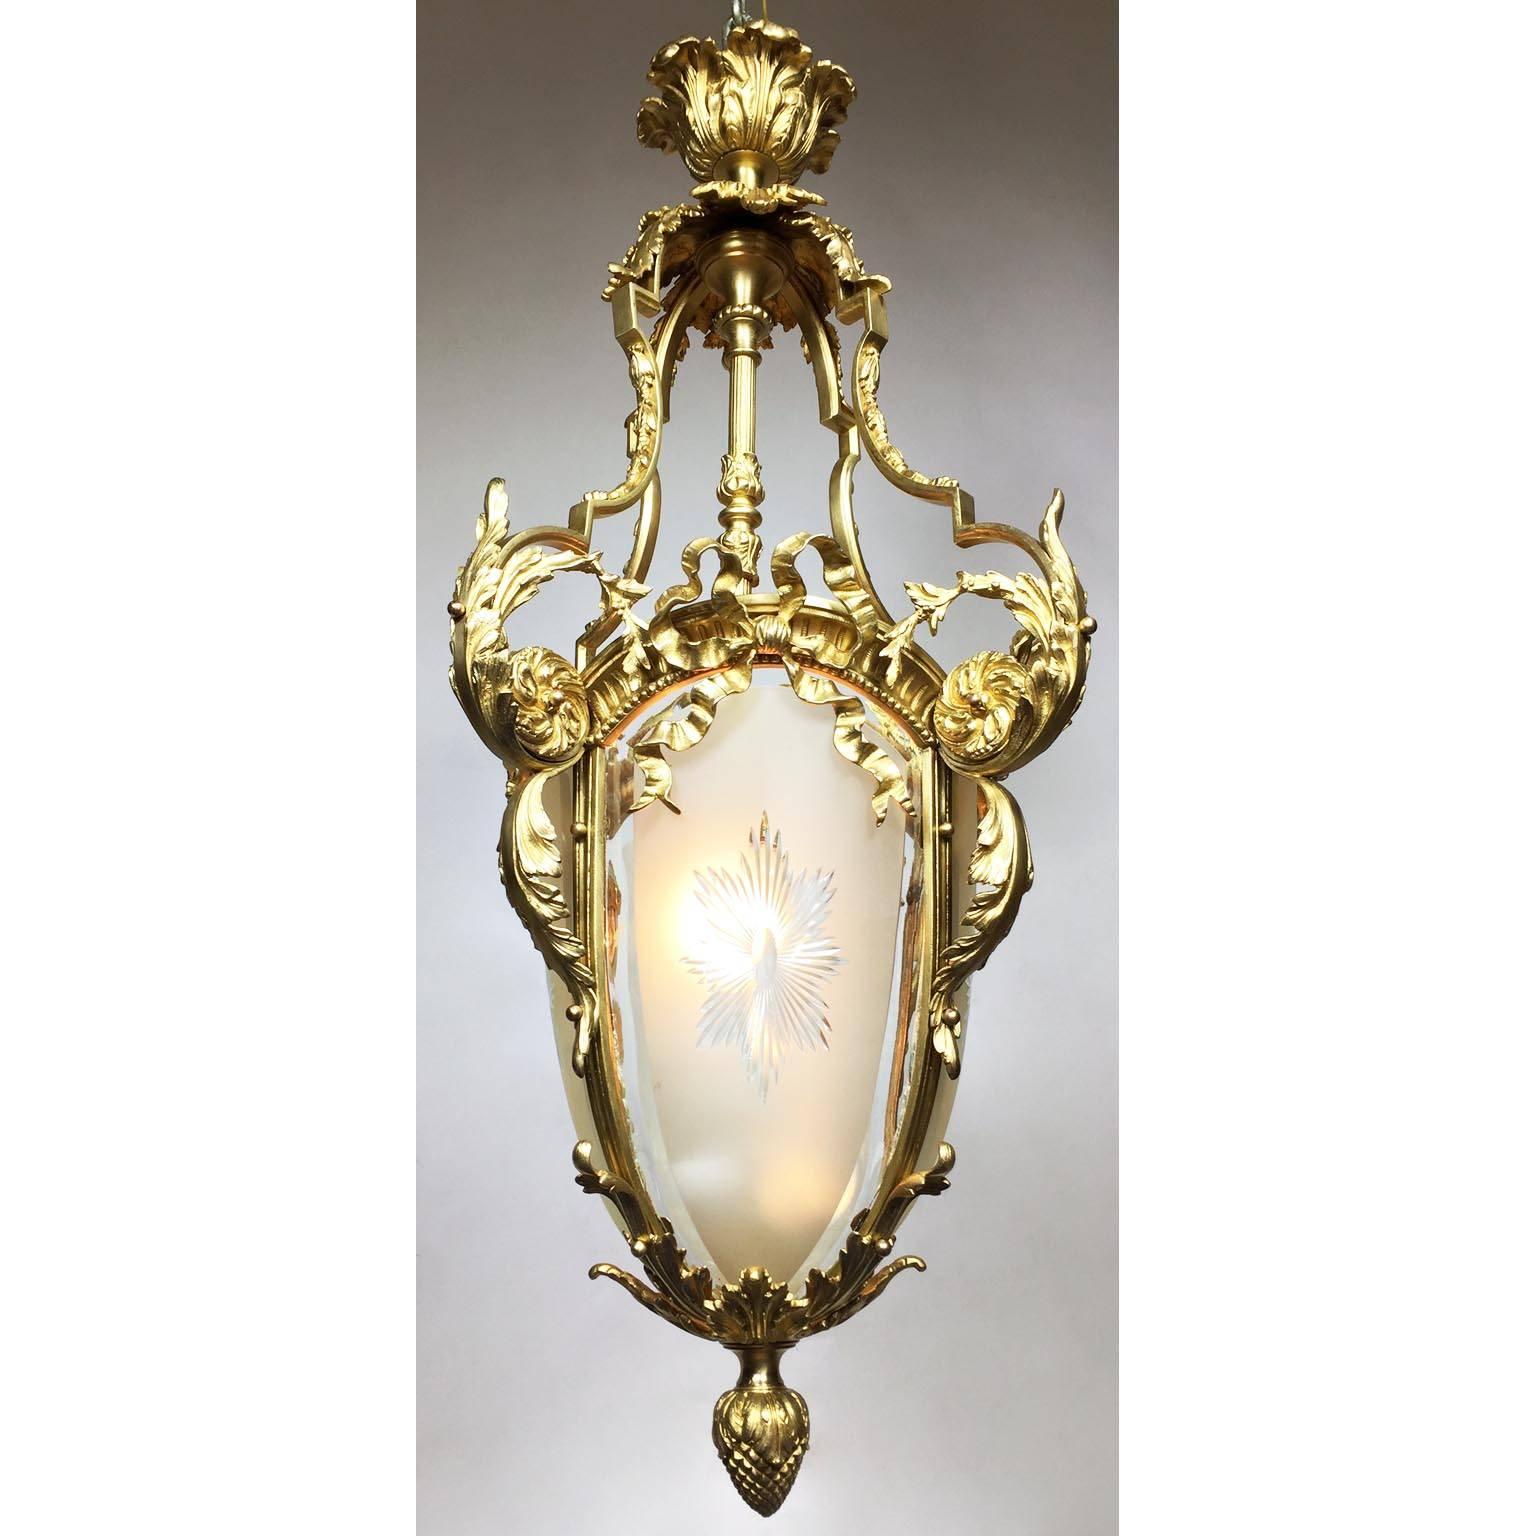 Eine sehr schöne französische Laterne im Stil Louis XV des 19. und 20. Jahrhunderts in Form einer Birne aus vergoldeter Bronze und diamantgeschliffenem Bent-Glas. Der eiförmige Korpus aus vergoldeter Bronze mit einer einzigen Leuchte wird von drei